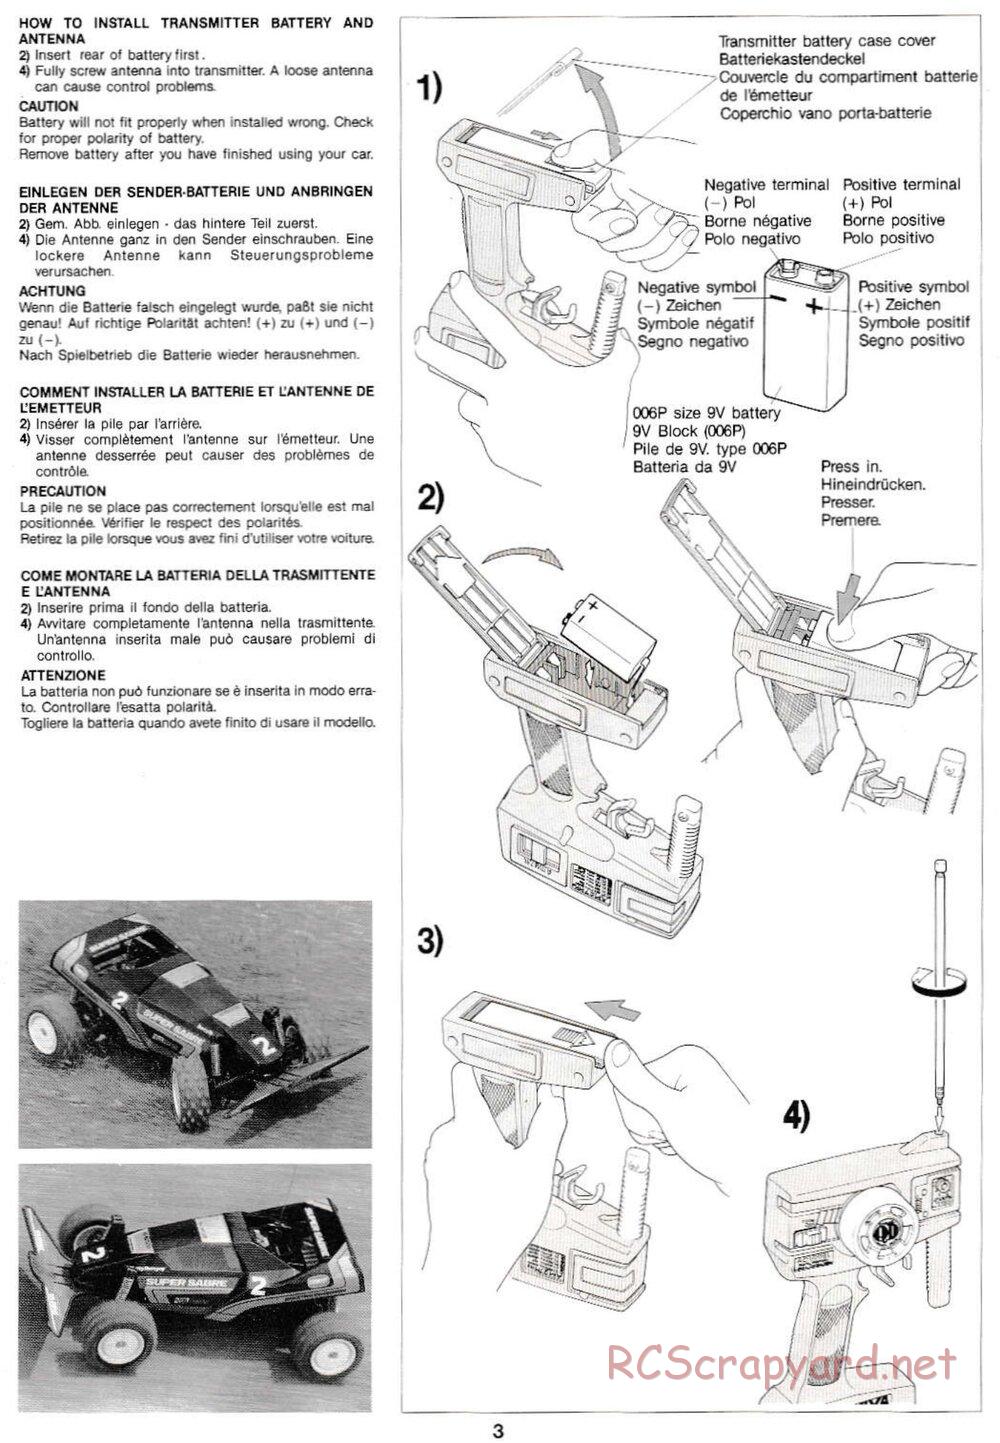 Tamiya - Super Sabre QD Chassis - Manual - Page 3